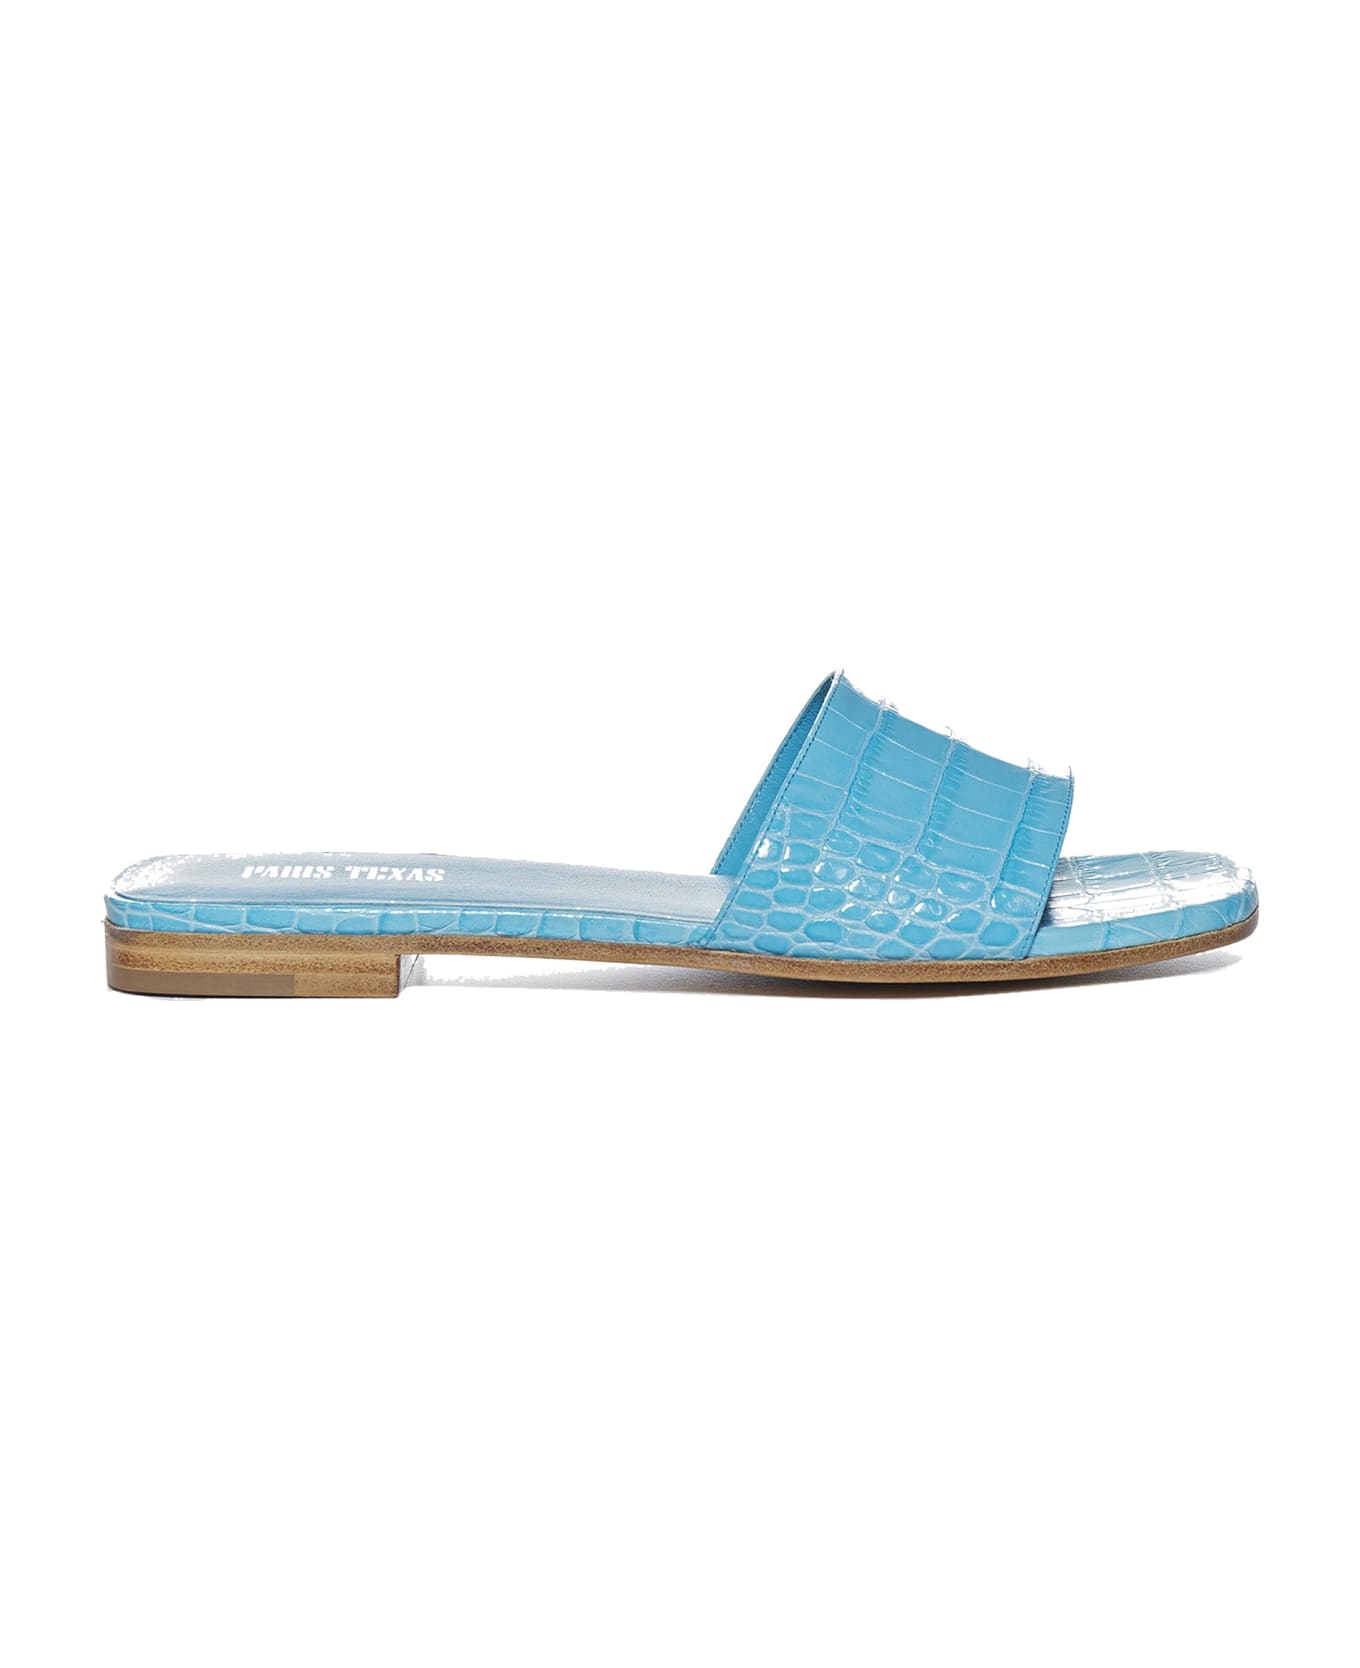 Paris Texas Rosa Flat Sandals - Blue